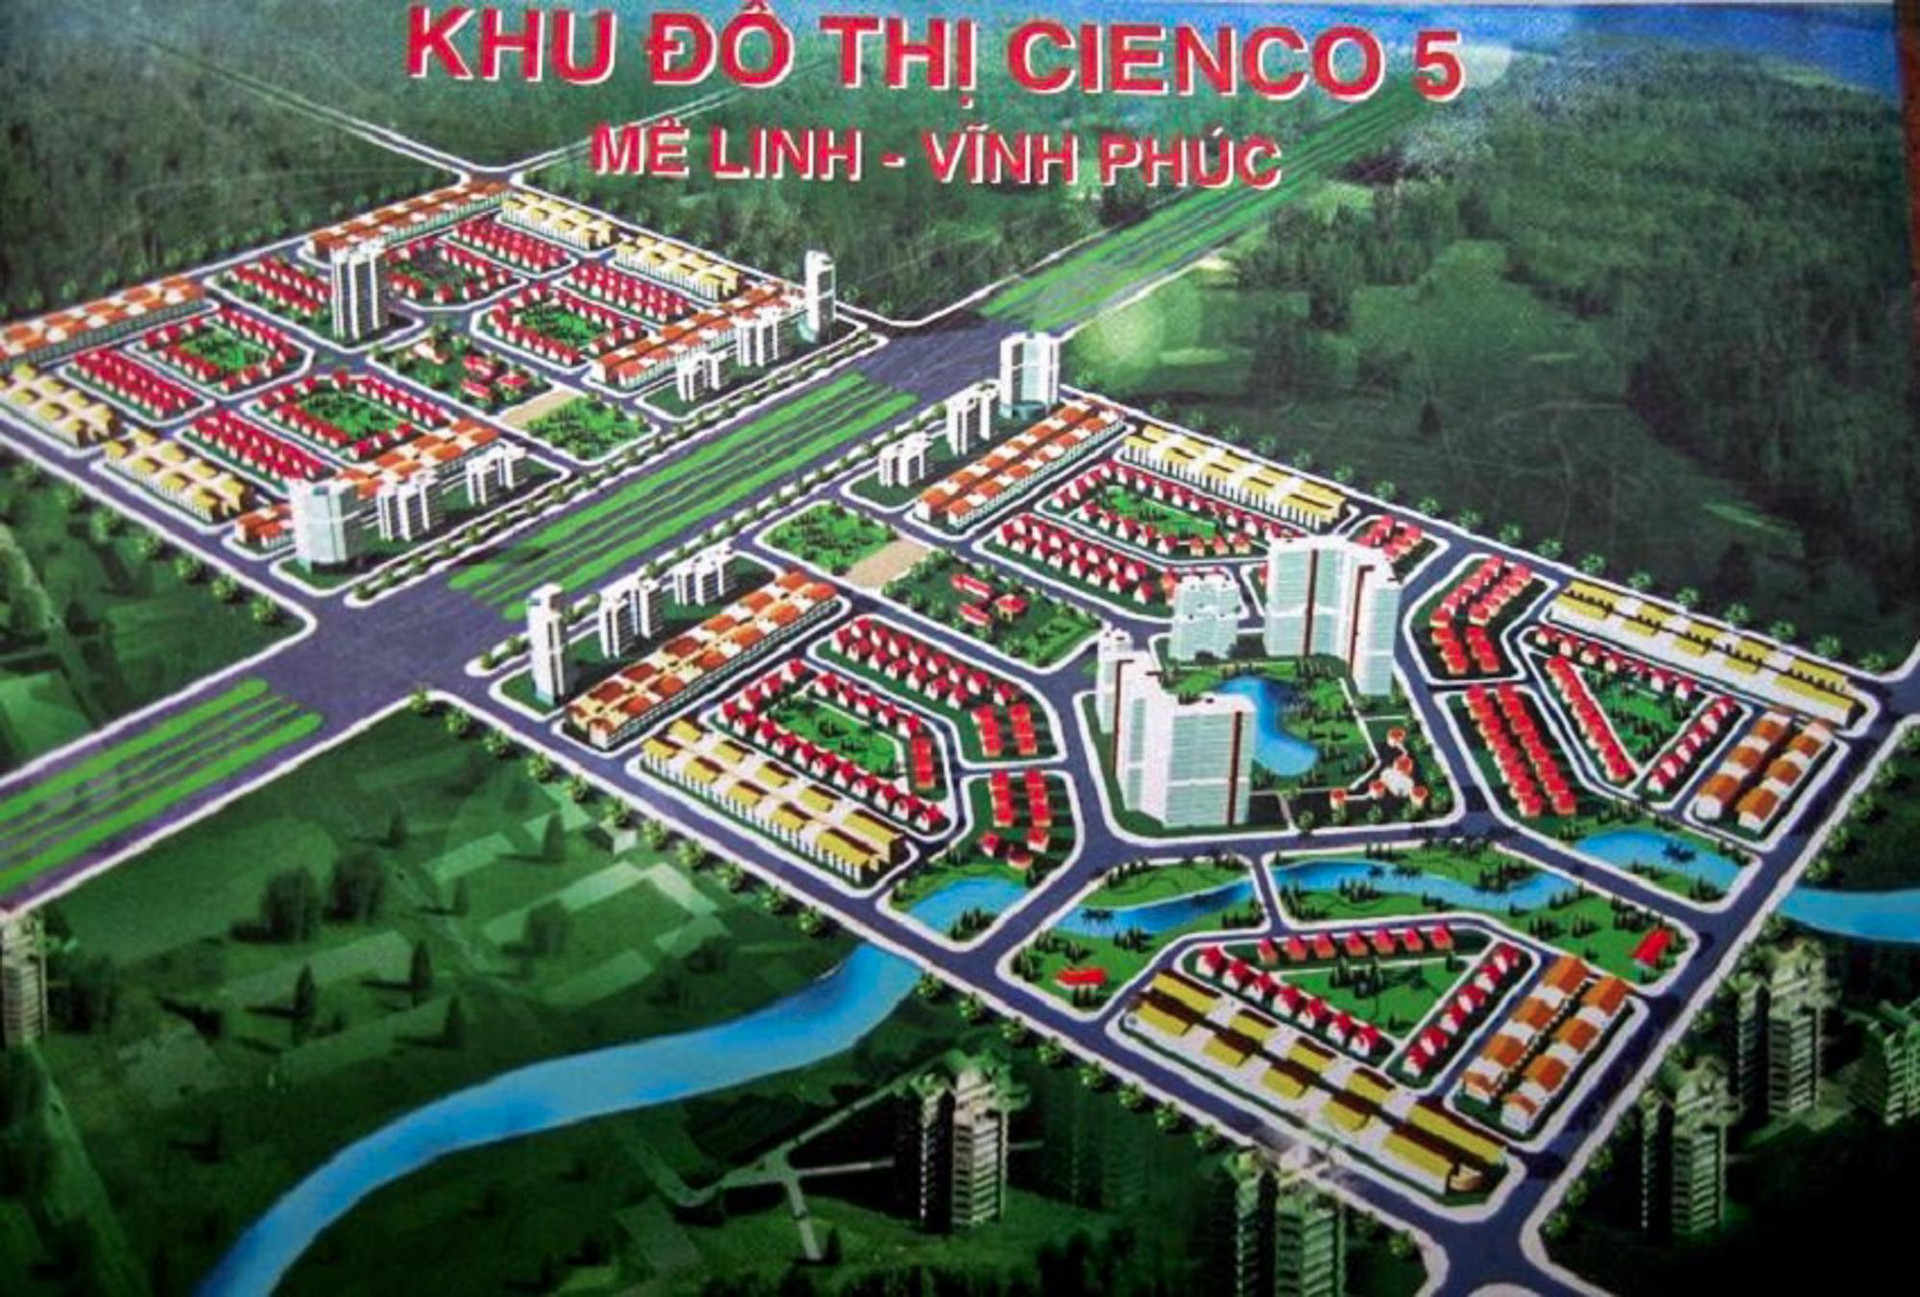 [Photo Essay] Sắp lên thành phố phía Bắc Hà Nội, &quot;làng biệt thự&quot; Mê Linh - nơi chôn vùi hàng nghìn tỷ đồng của nhà đầu tư hiện nay ra sao? - Ảnh 6.